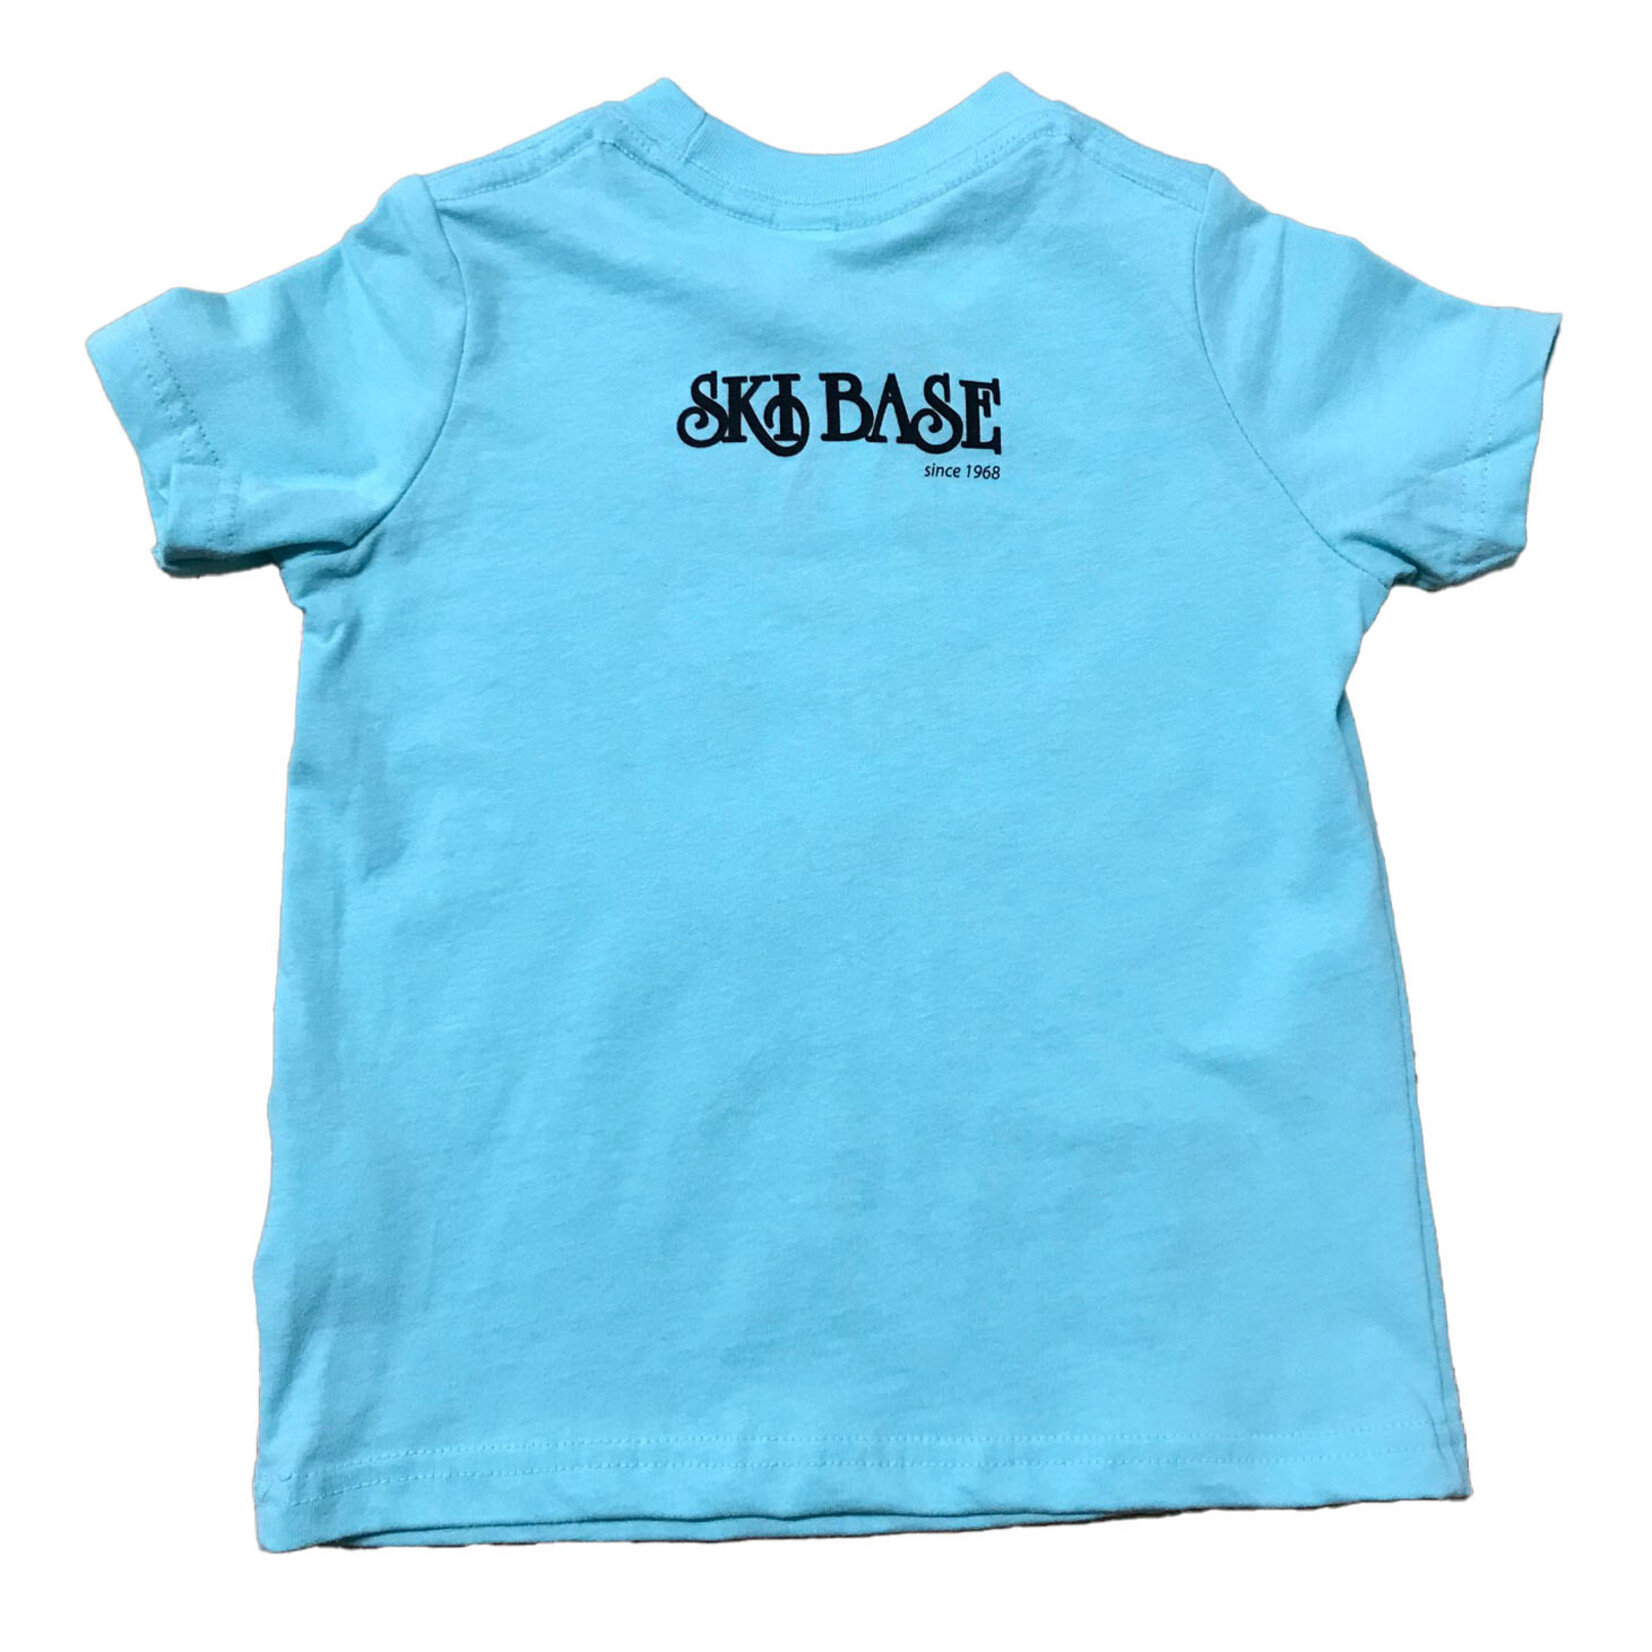 Fernie Griz Kids T-Shirt